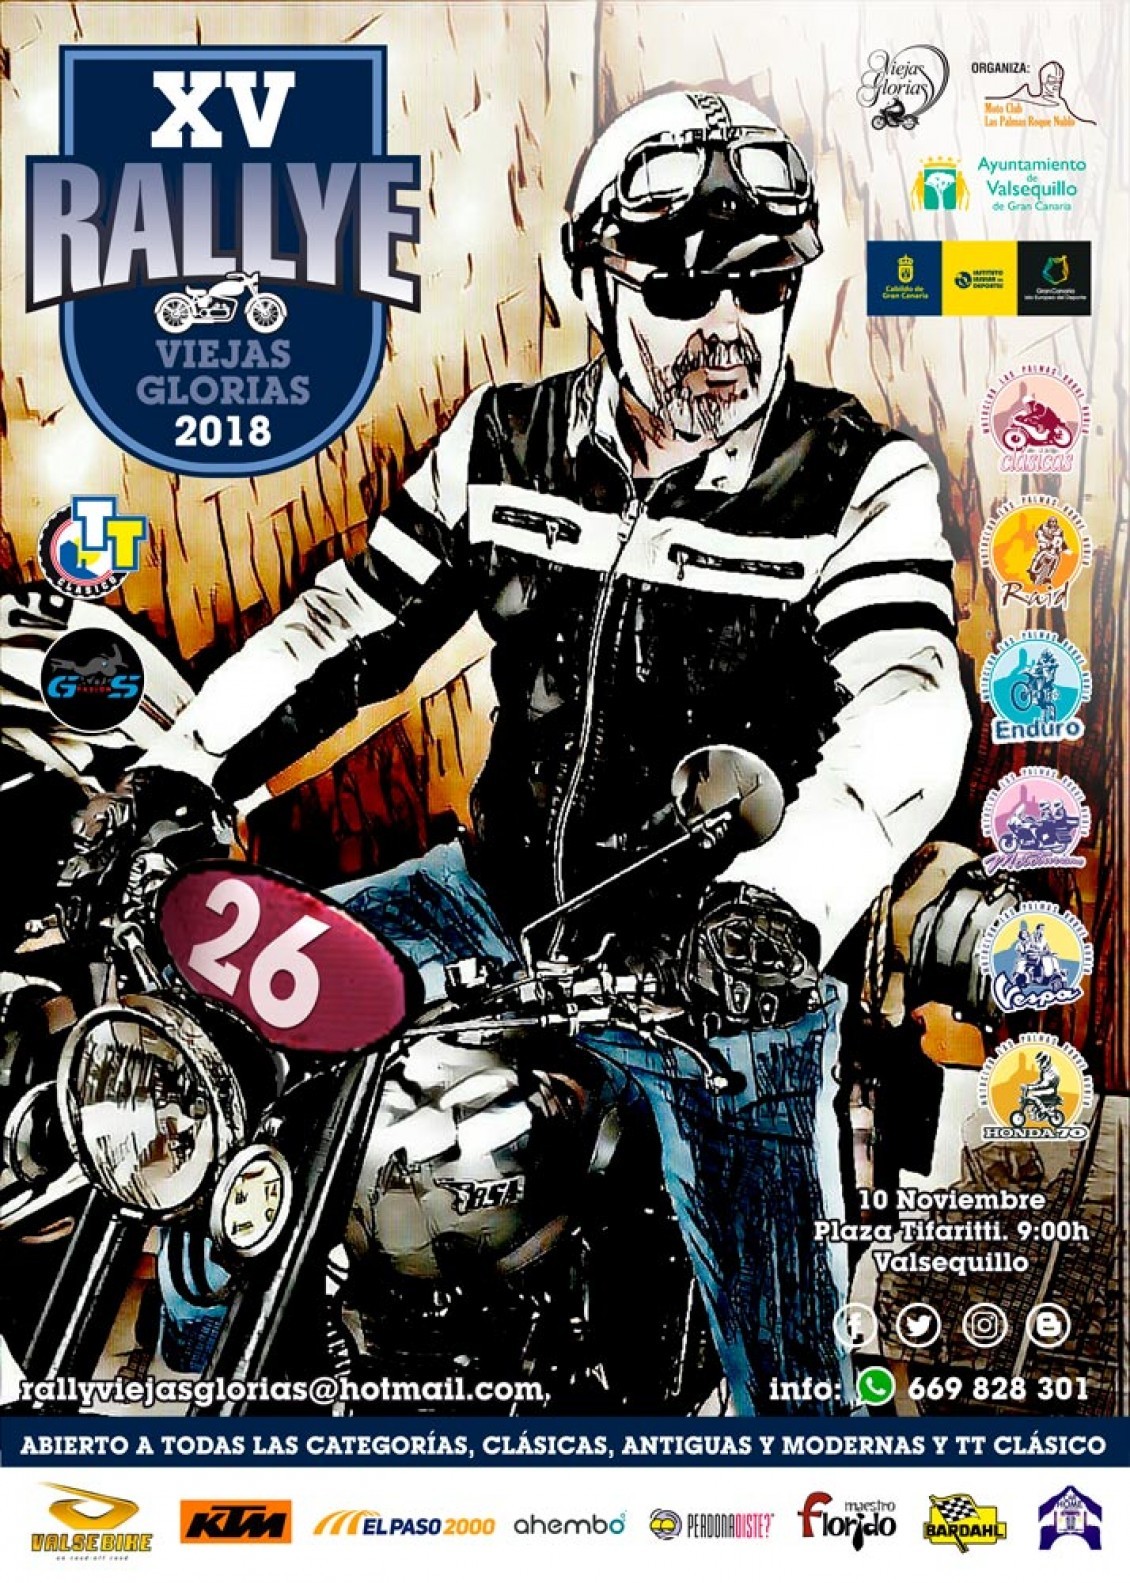 XV Rally Viejas Glorias 2018